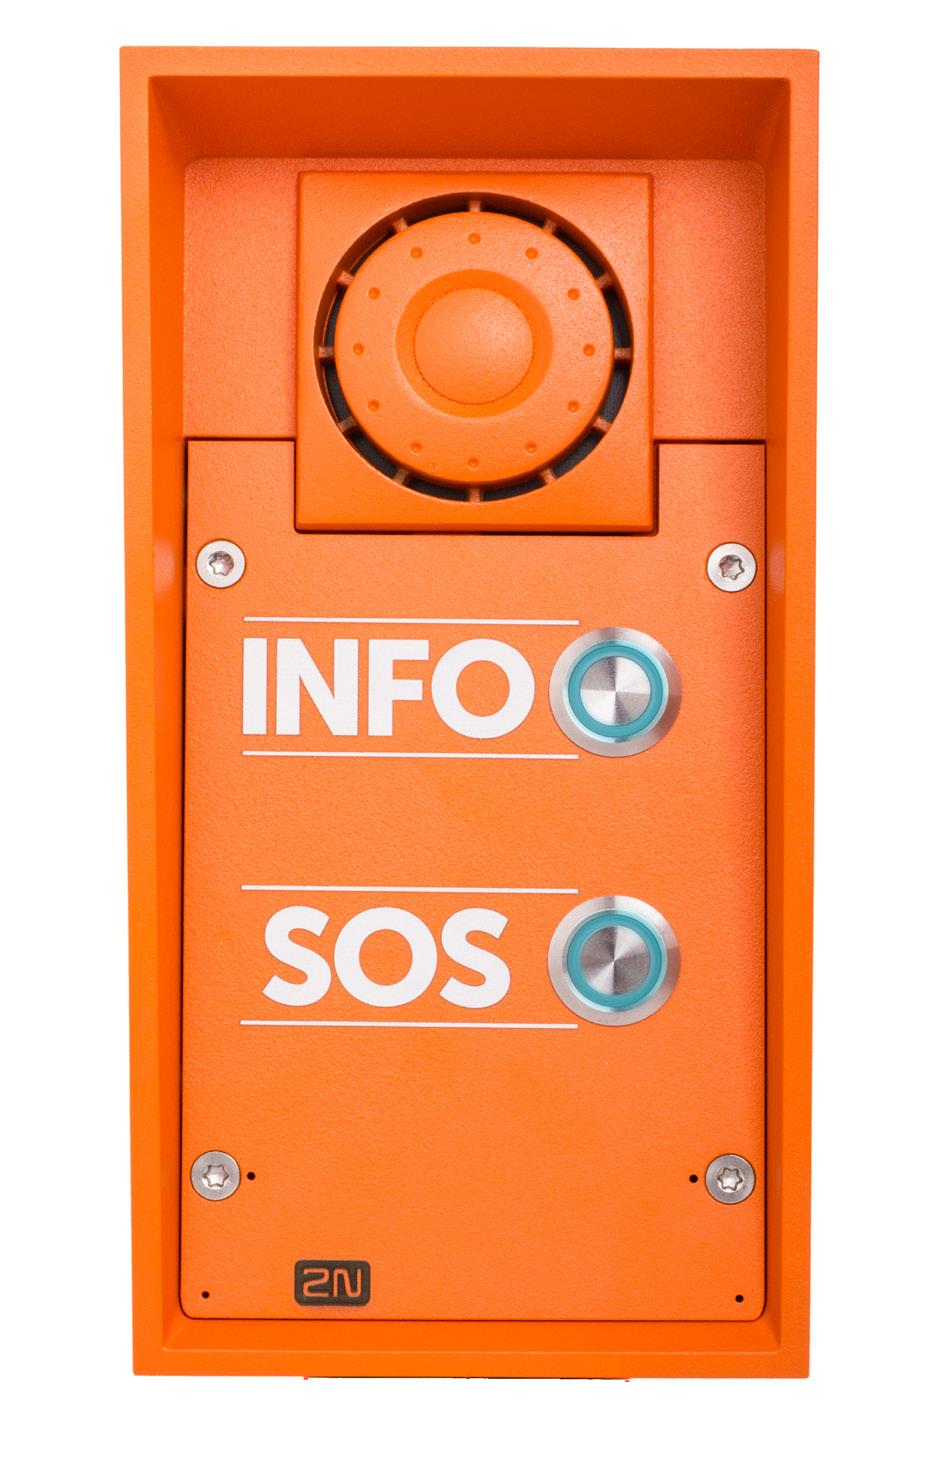 2N Helios IP Safety Nejodolnější IP interkom na trhu, který obstojí i v nejnáročnějších podmínkách Možnost využít externí IP kameru pro videohovory Výrazná oranžová barva, díky které je interkom